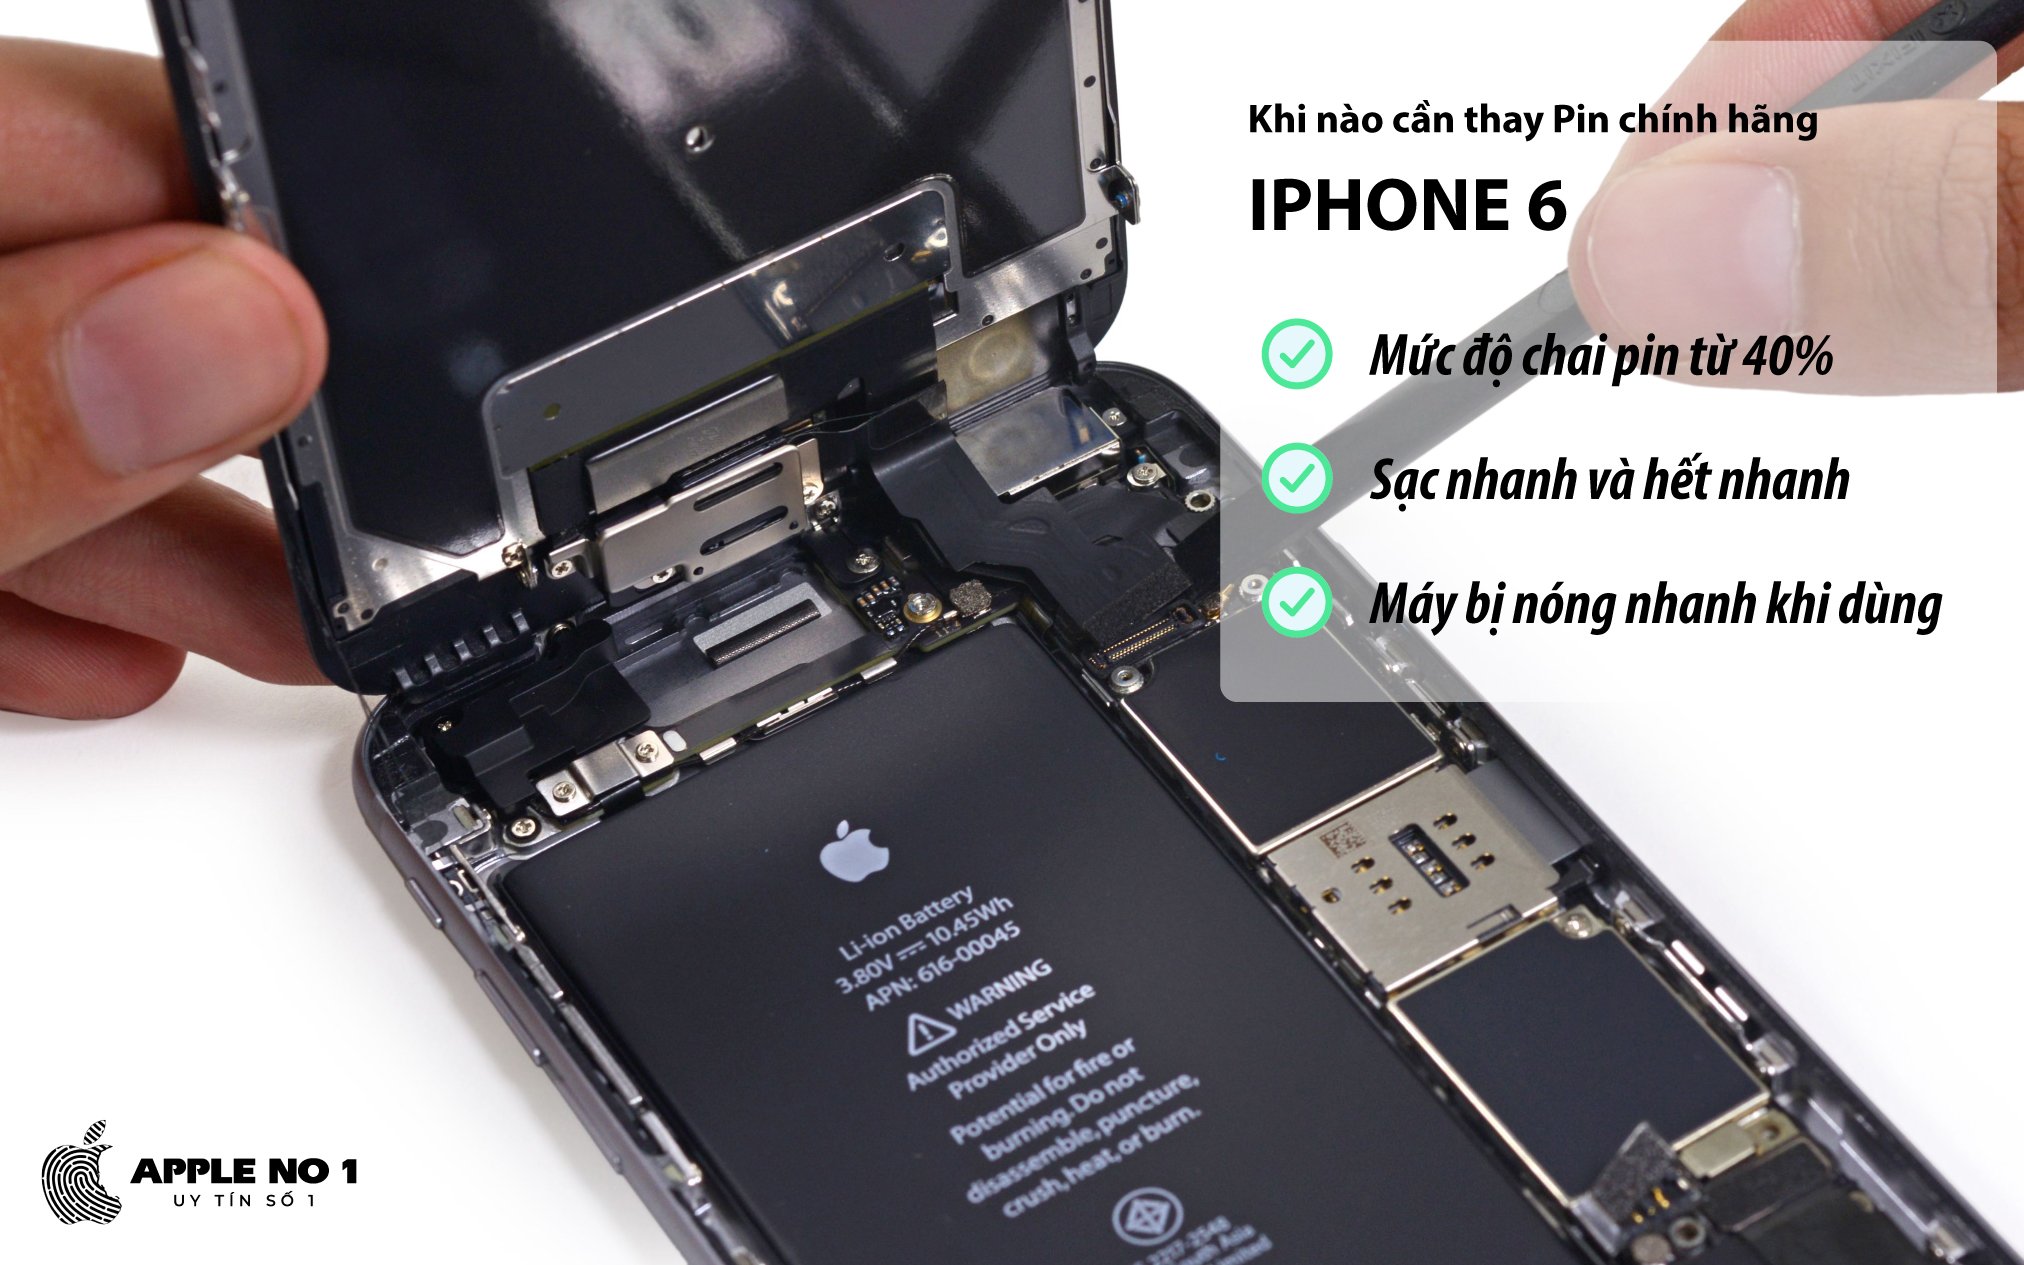 Khi nào cần thay pin iPhone 6 chính hãng?